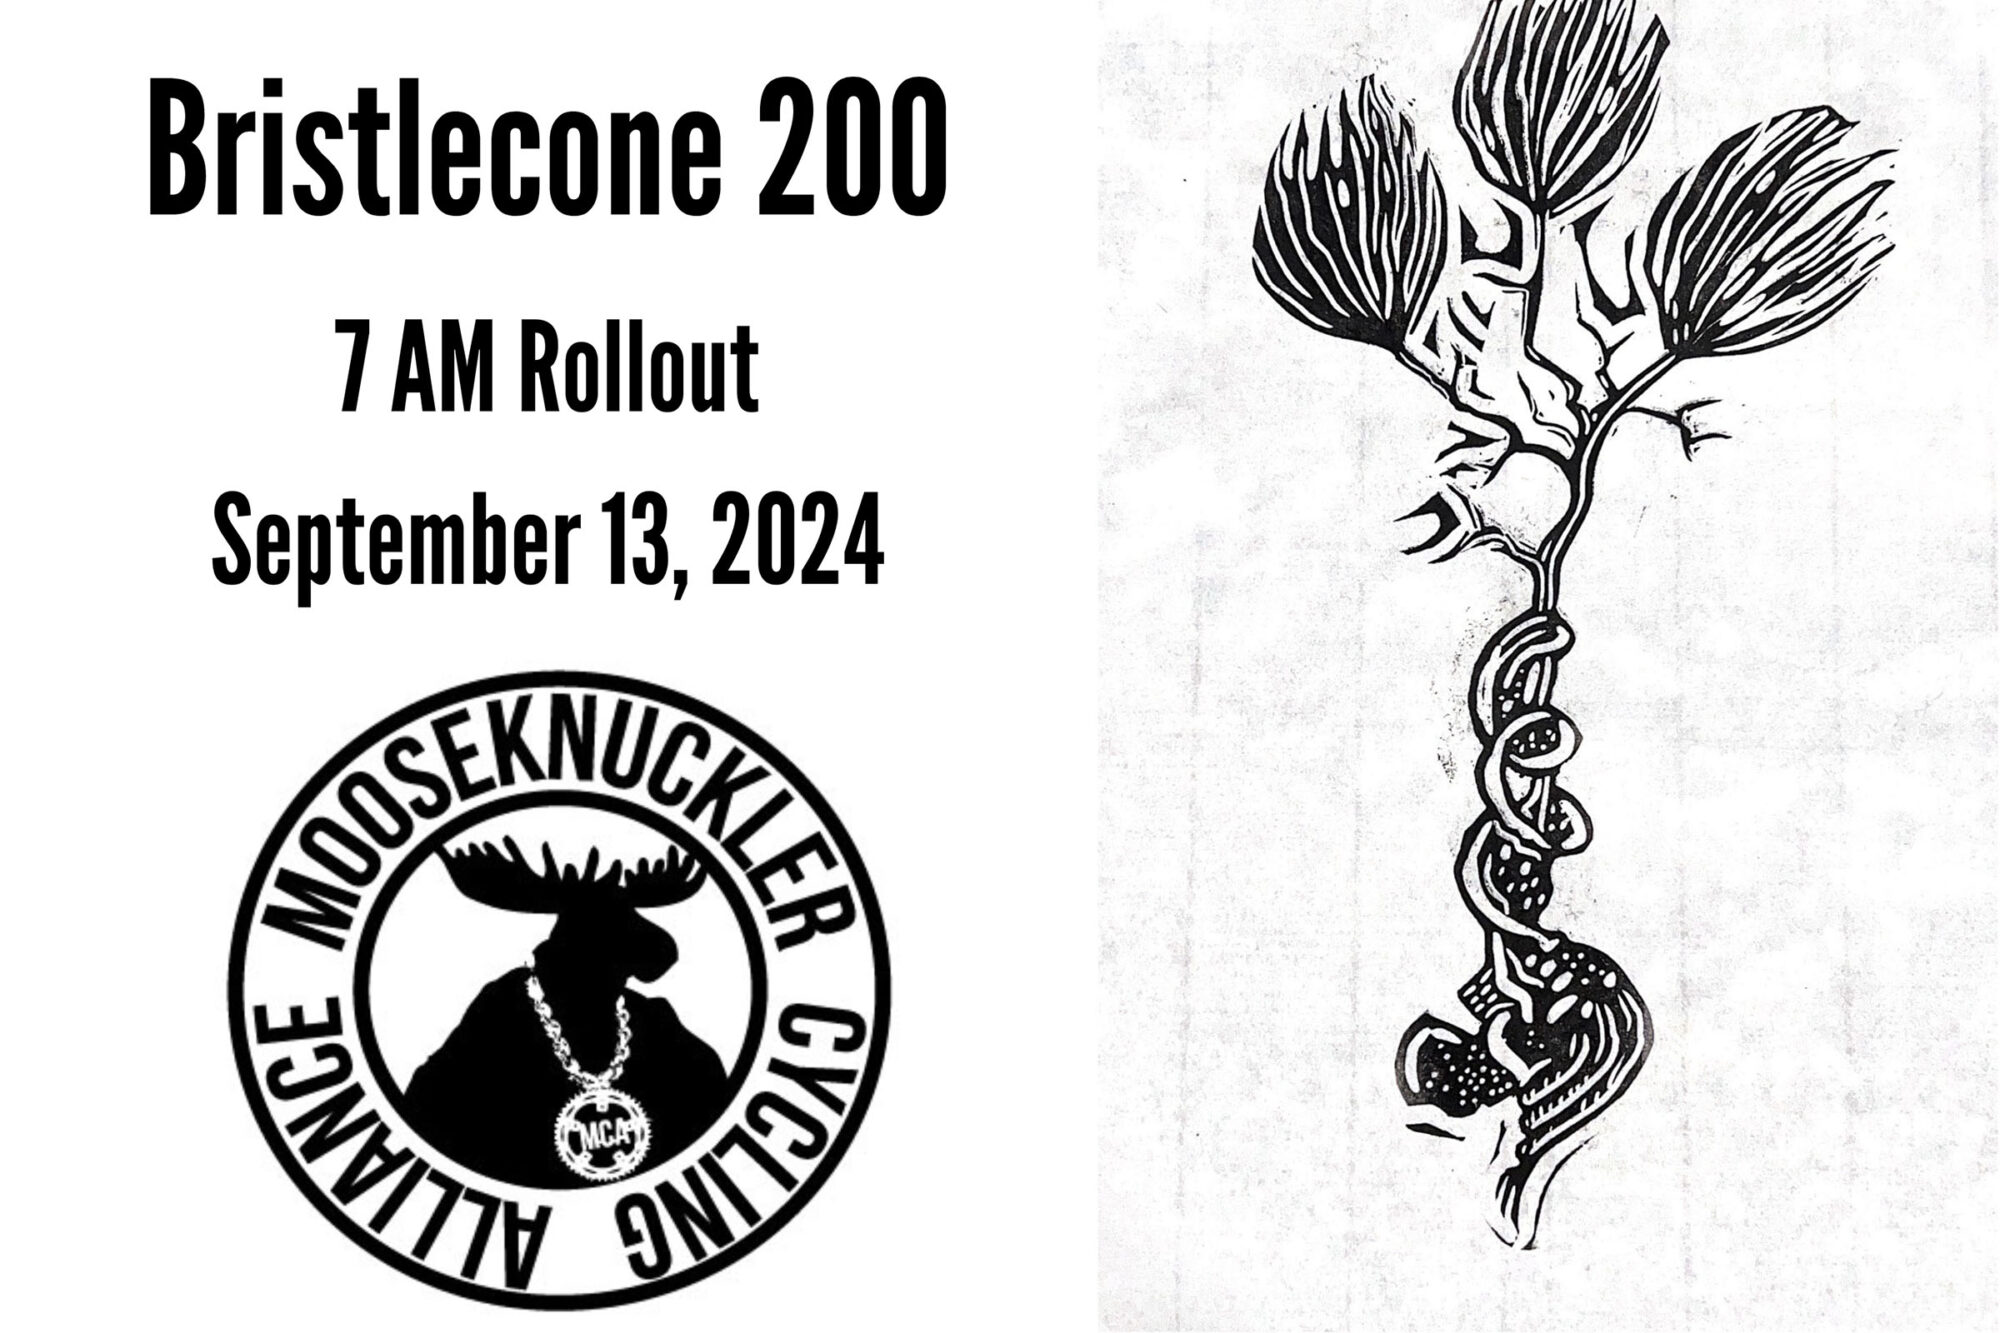 Bristlecone 200